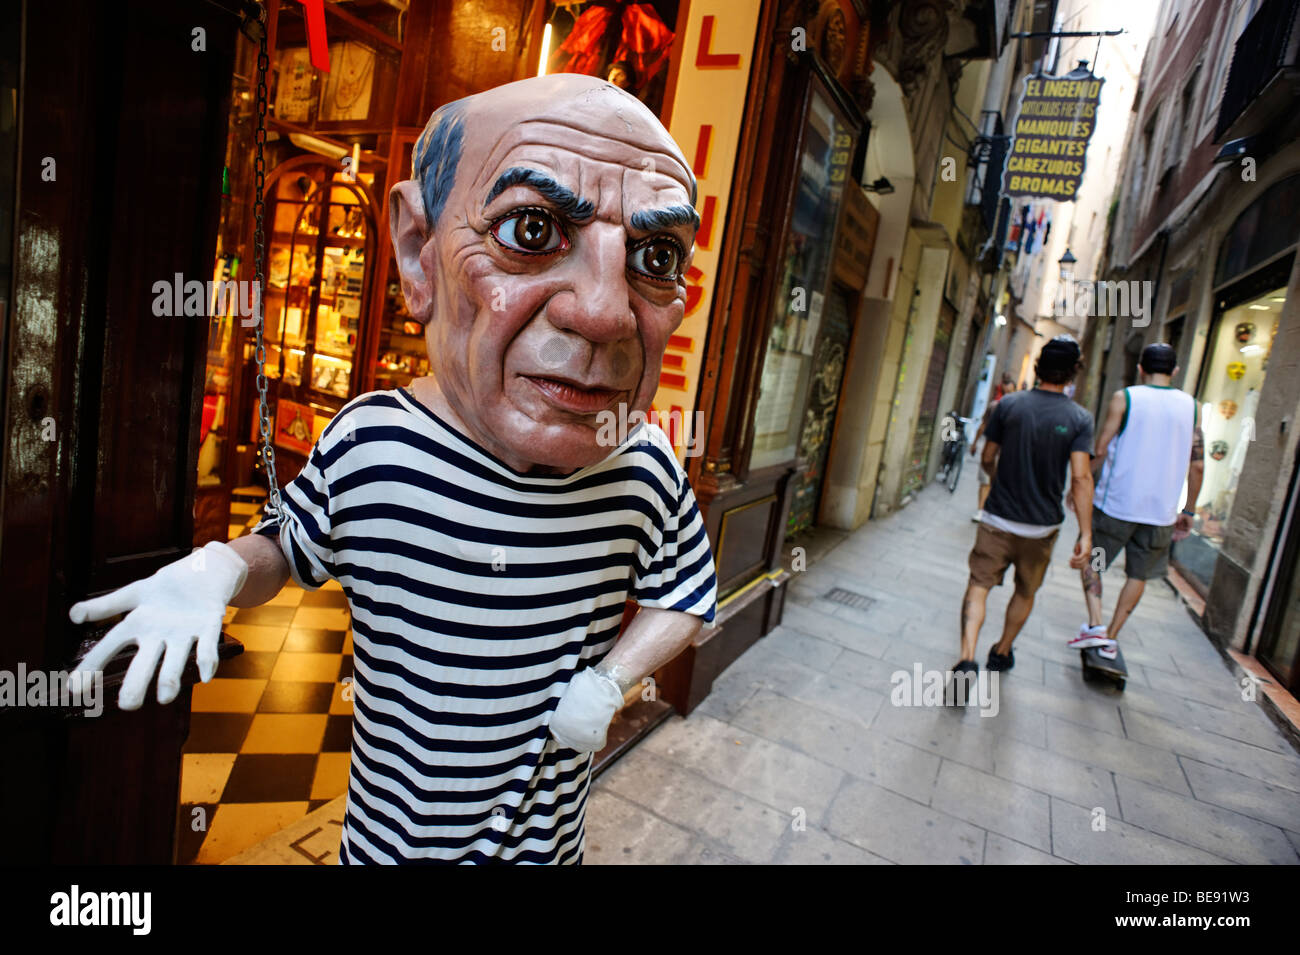 Pablo Picasso manichino esterno giocolieri store. Barri Gotic. Barcellona. Spagna Foto Stock